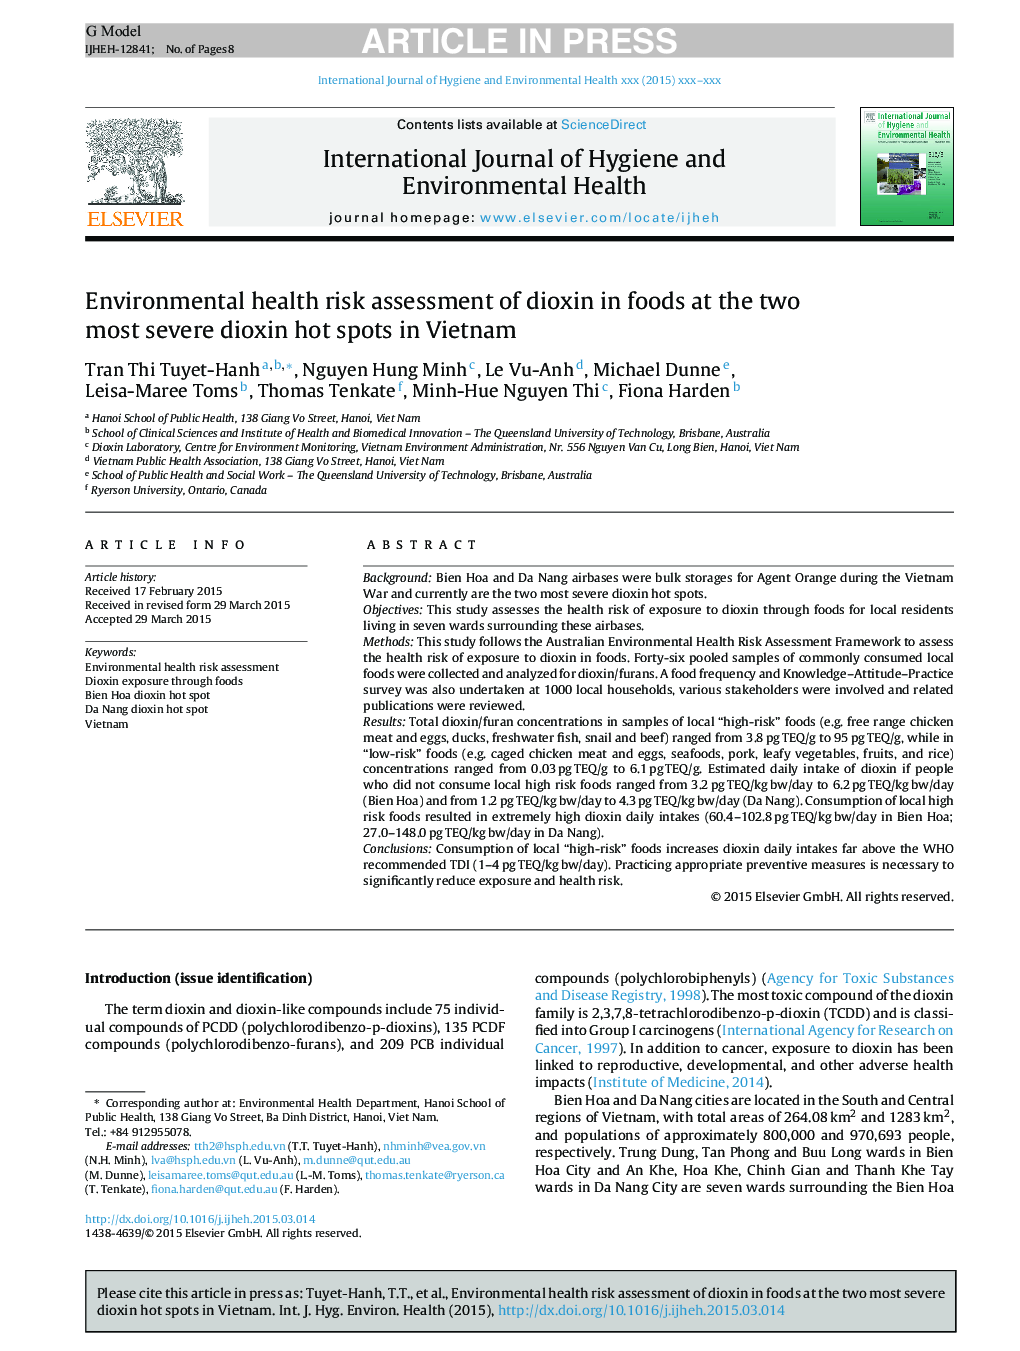 ارزیابی ریسک سلامت محیط زیست دیوکسین در غذاها در دو نقطه شدید دیواکسین در ویتنام 